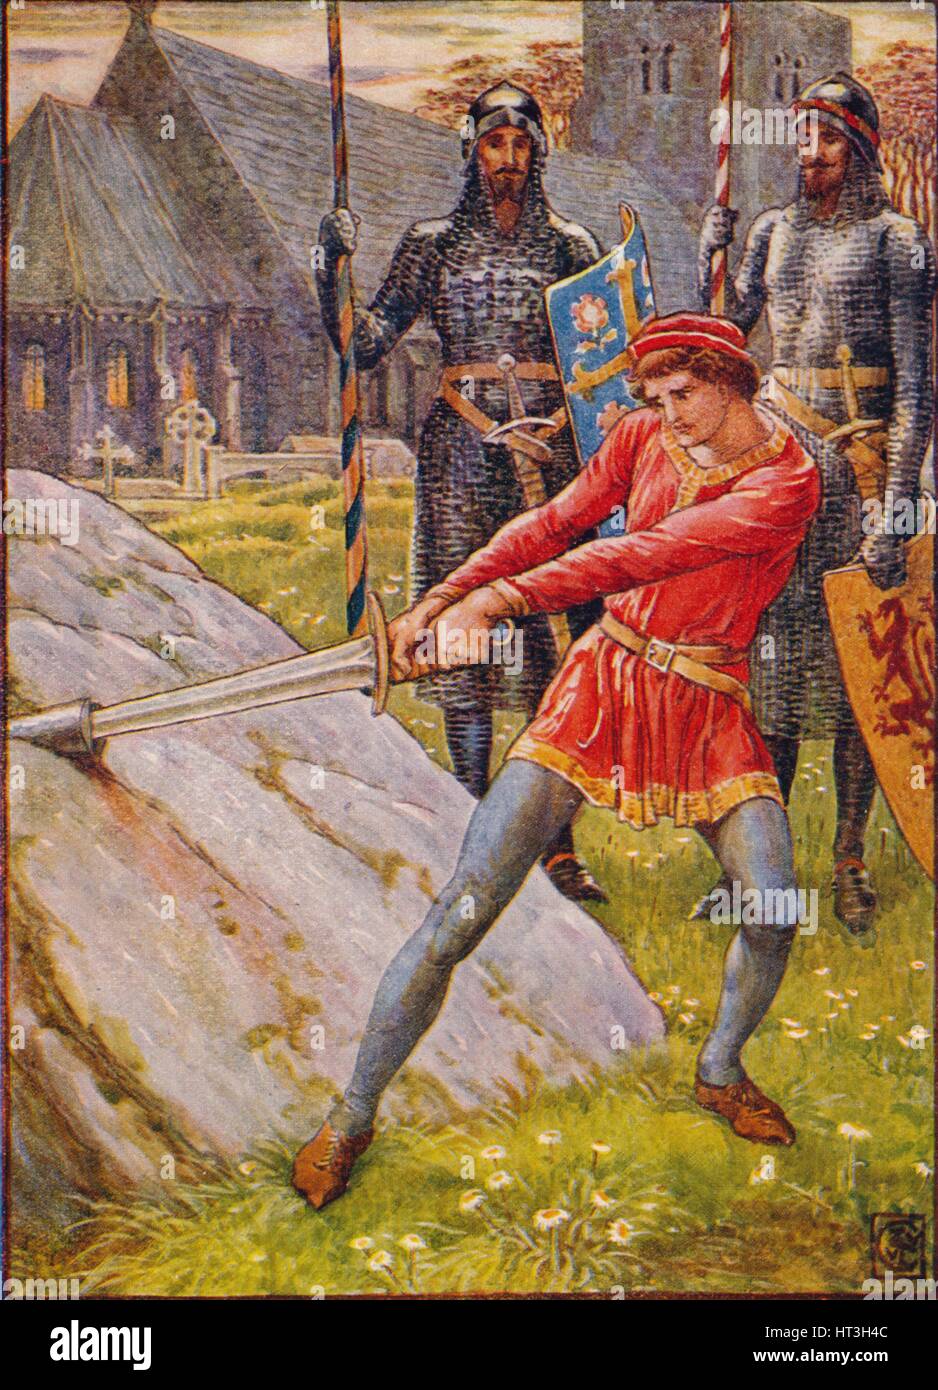 Arthur zieht das Schwert aus dem Stein", 1911. Künstler: Walter Crane  Stockfotografie - Alamy